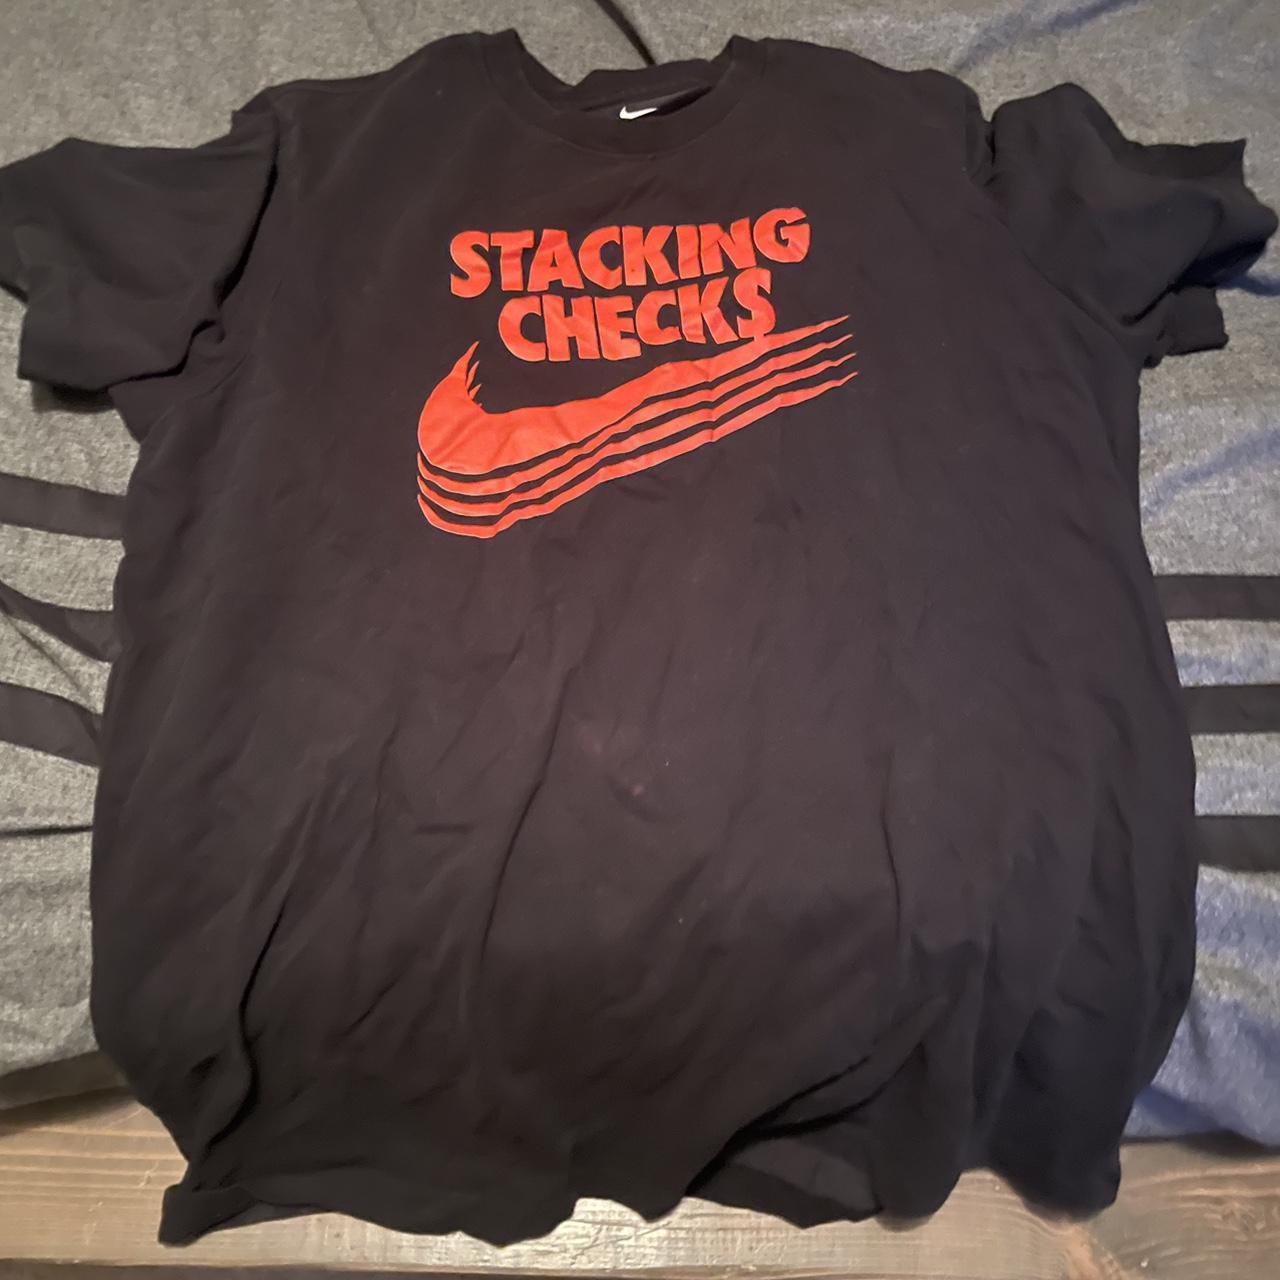 Nike Men's Black T-shirt